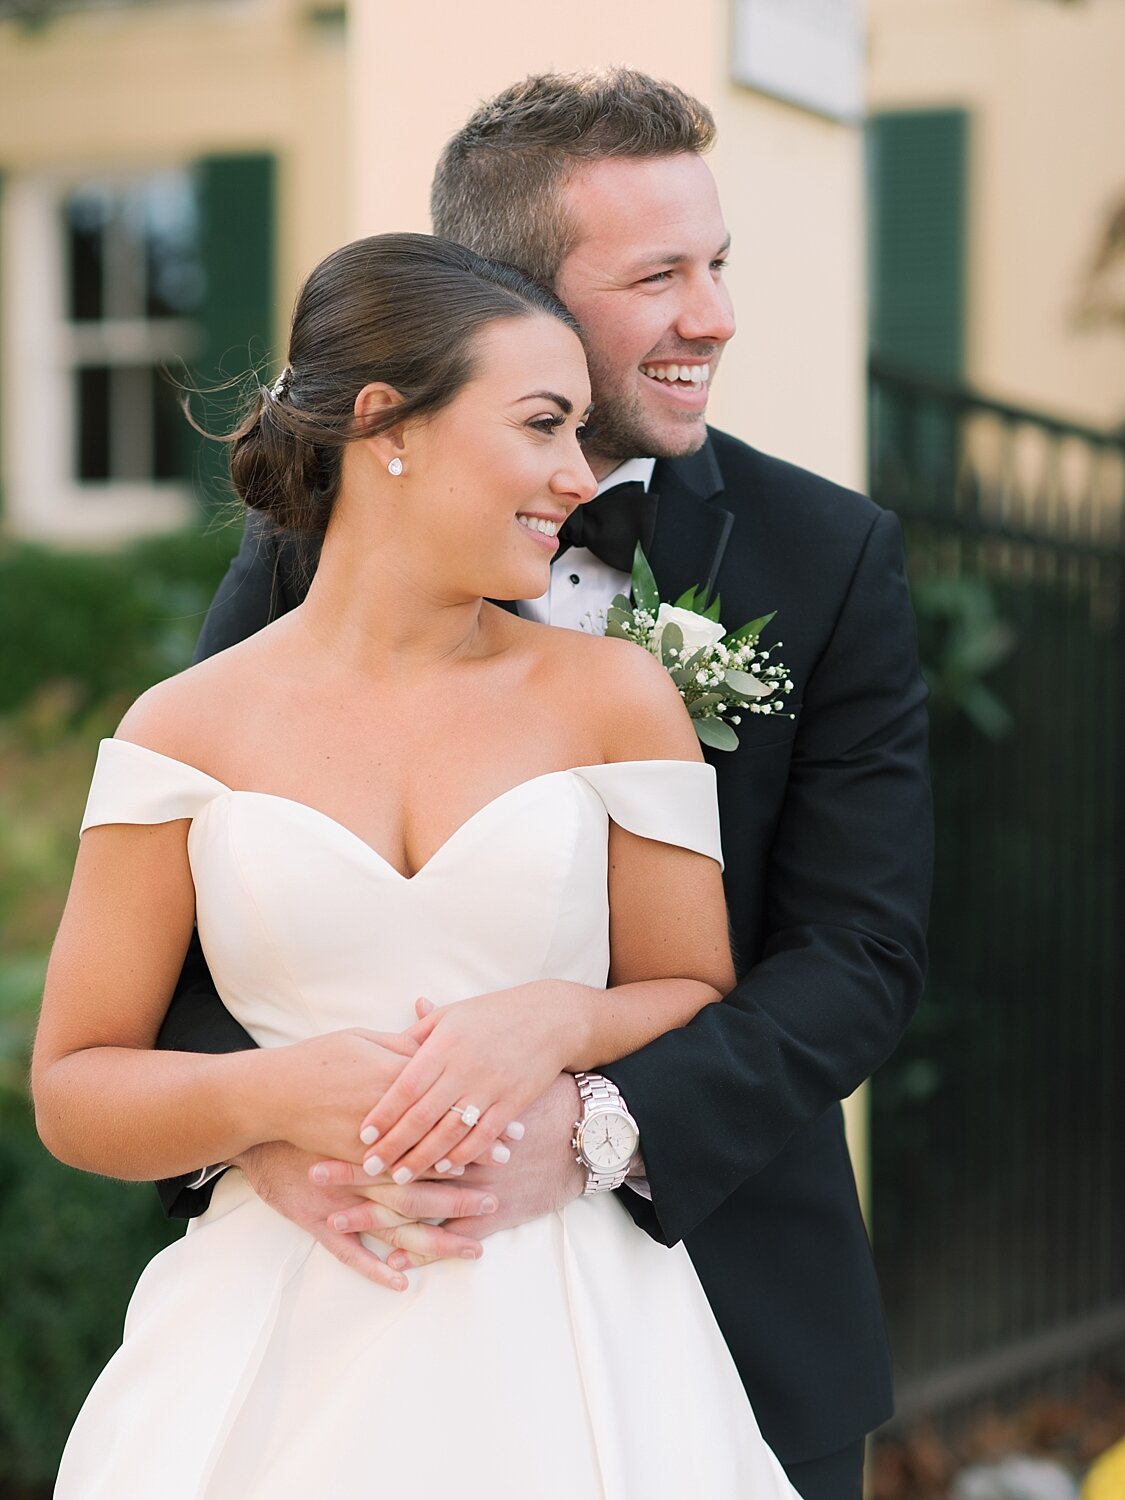 joyful newlyweds photographed by Asher Gardner Photography